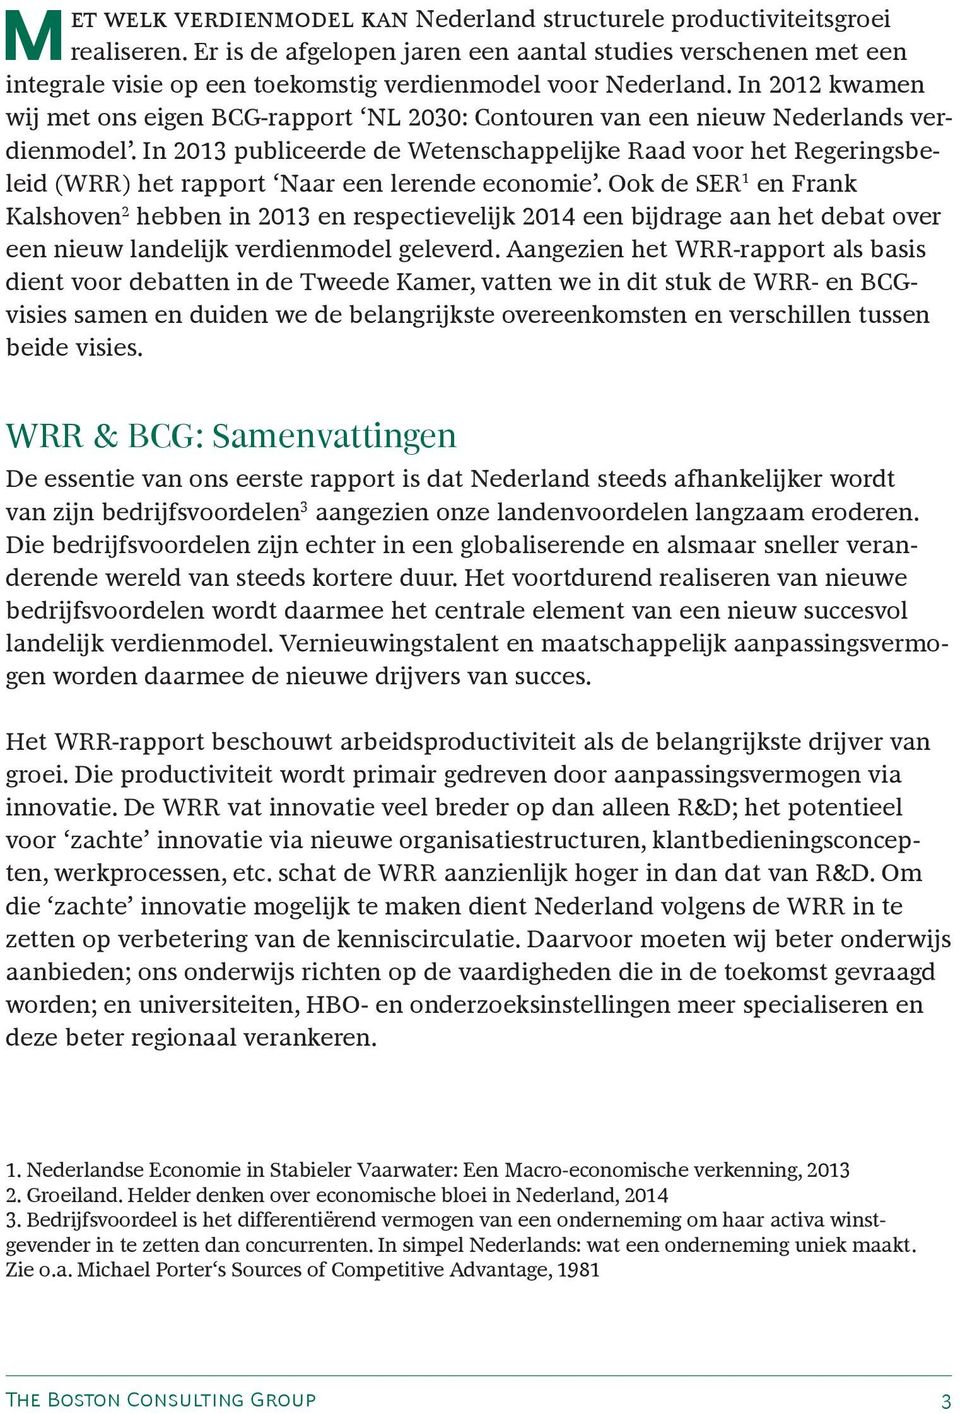 In 2012 kwamen wij met ons eigen BCG-rapport NL 2030: Contouren van een nieuw Nederlands verdienmodel.